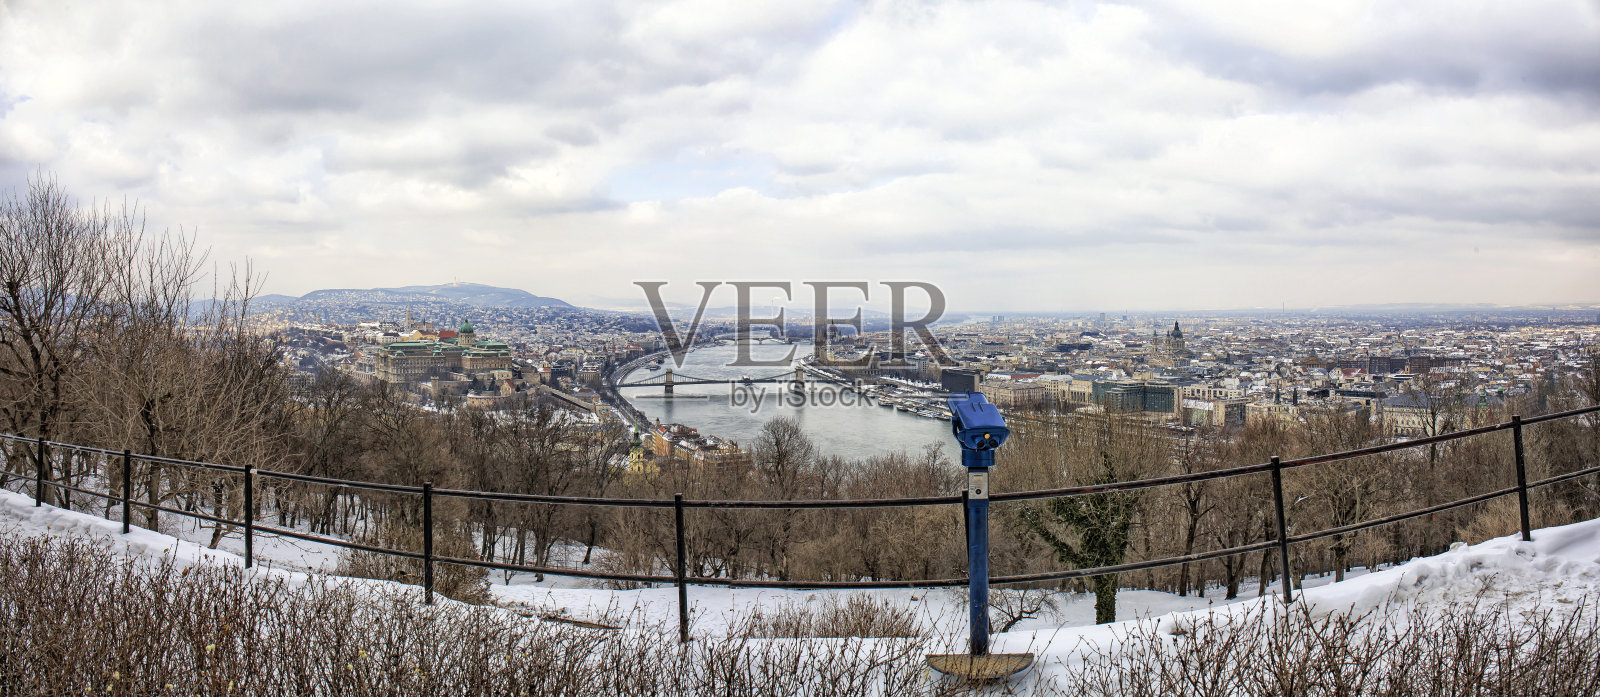 冬季全景布达佩斯与白雪皑皑的风景照片摄影图片